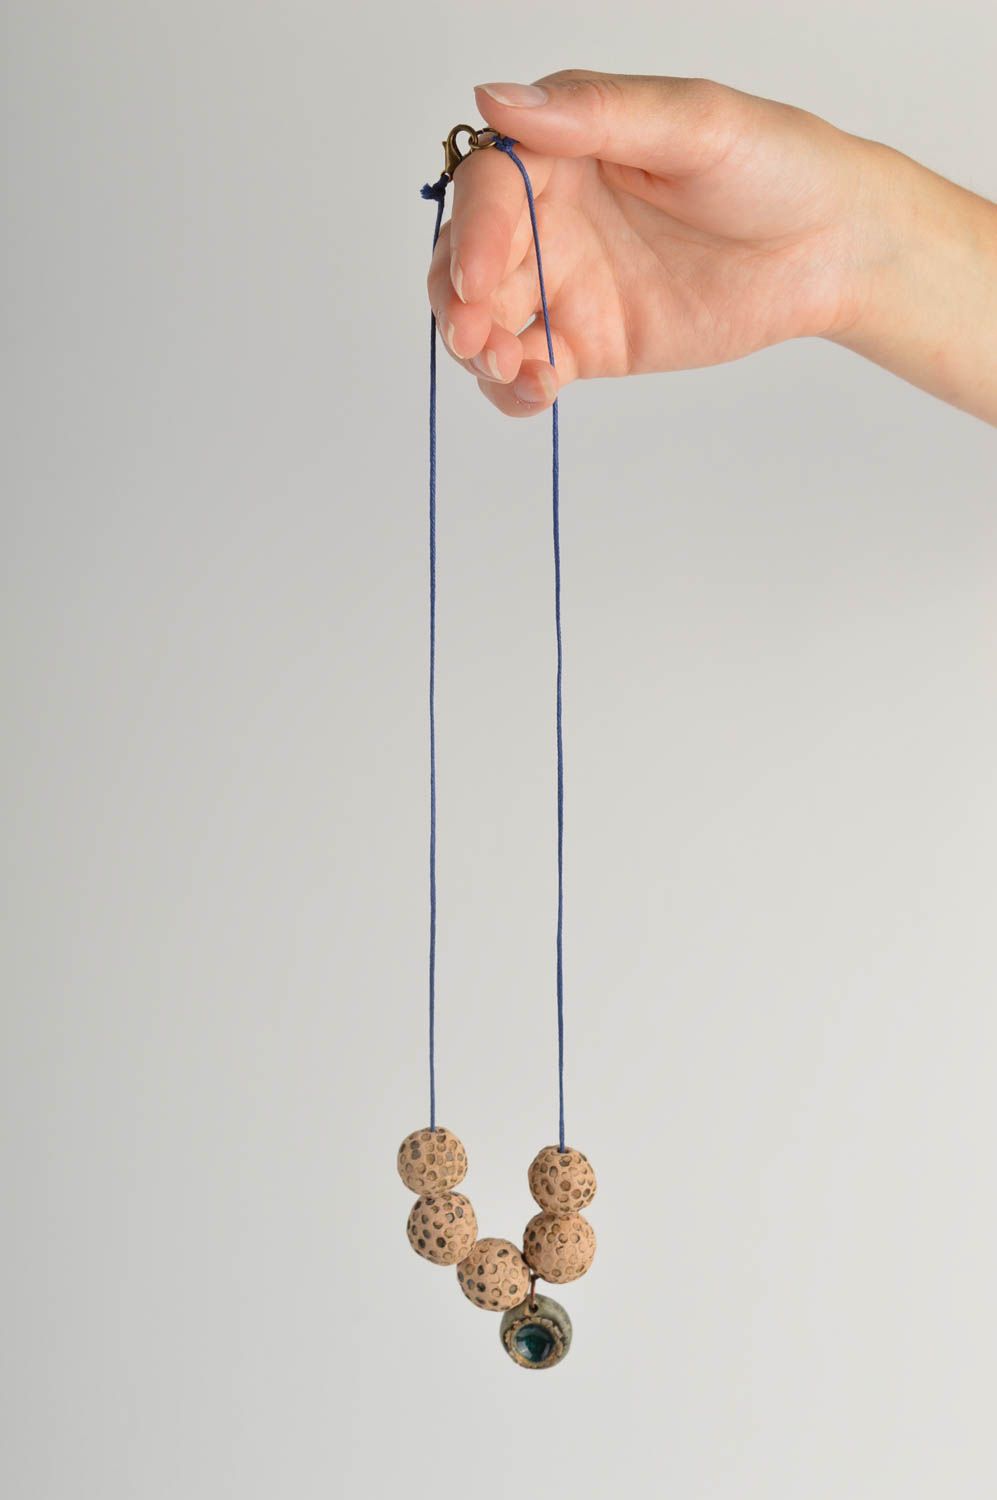 Керамическое украшение кулон ручной работы глиняная подвеска на шею с буиснами фото 2